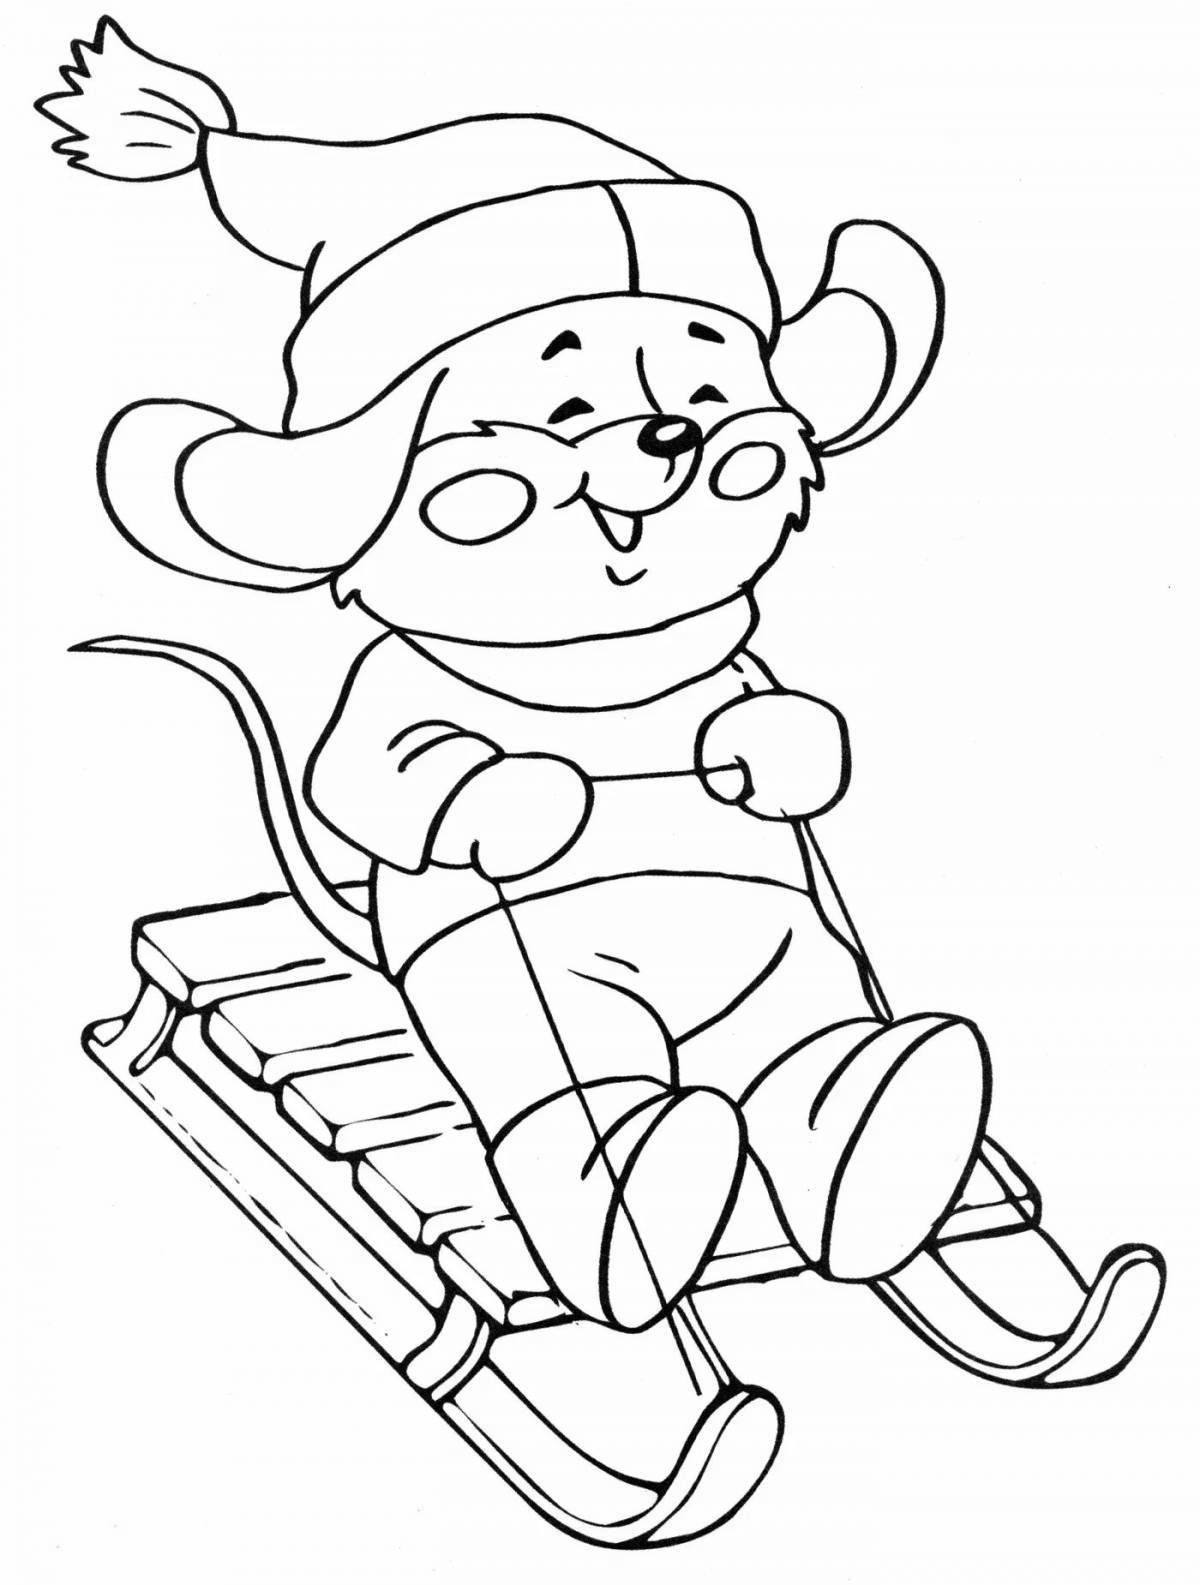 Cute bear skiing coloring book